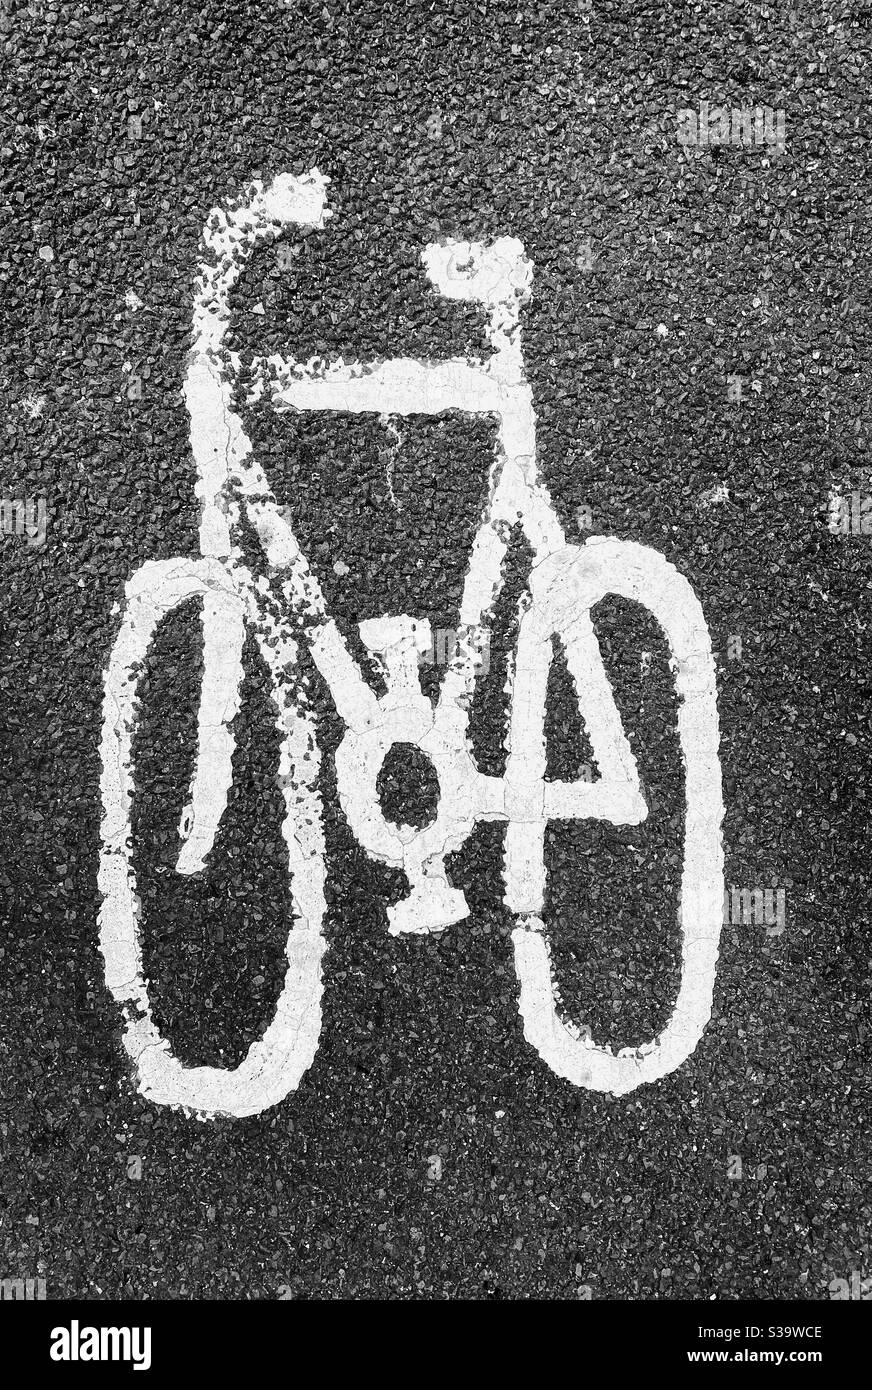 Immagine in alto (posizione piatta) di un'immagine che raffigura una bicicletta. Questa è una pista ciclabile! Se più persone si fossero ciclate, ci sarebbe meno emissioni di gas serra! Emergenza climatica? Foto ©️ COLIN HOSKINS. Foto Stock